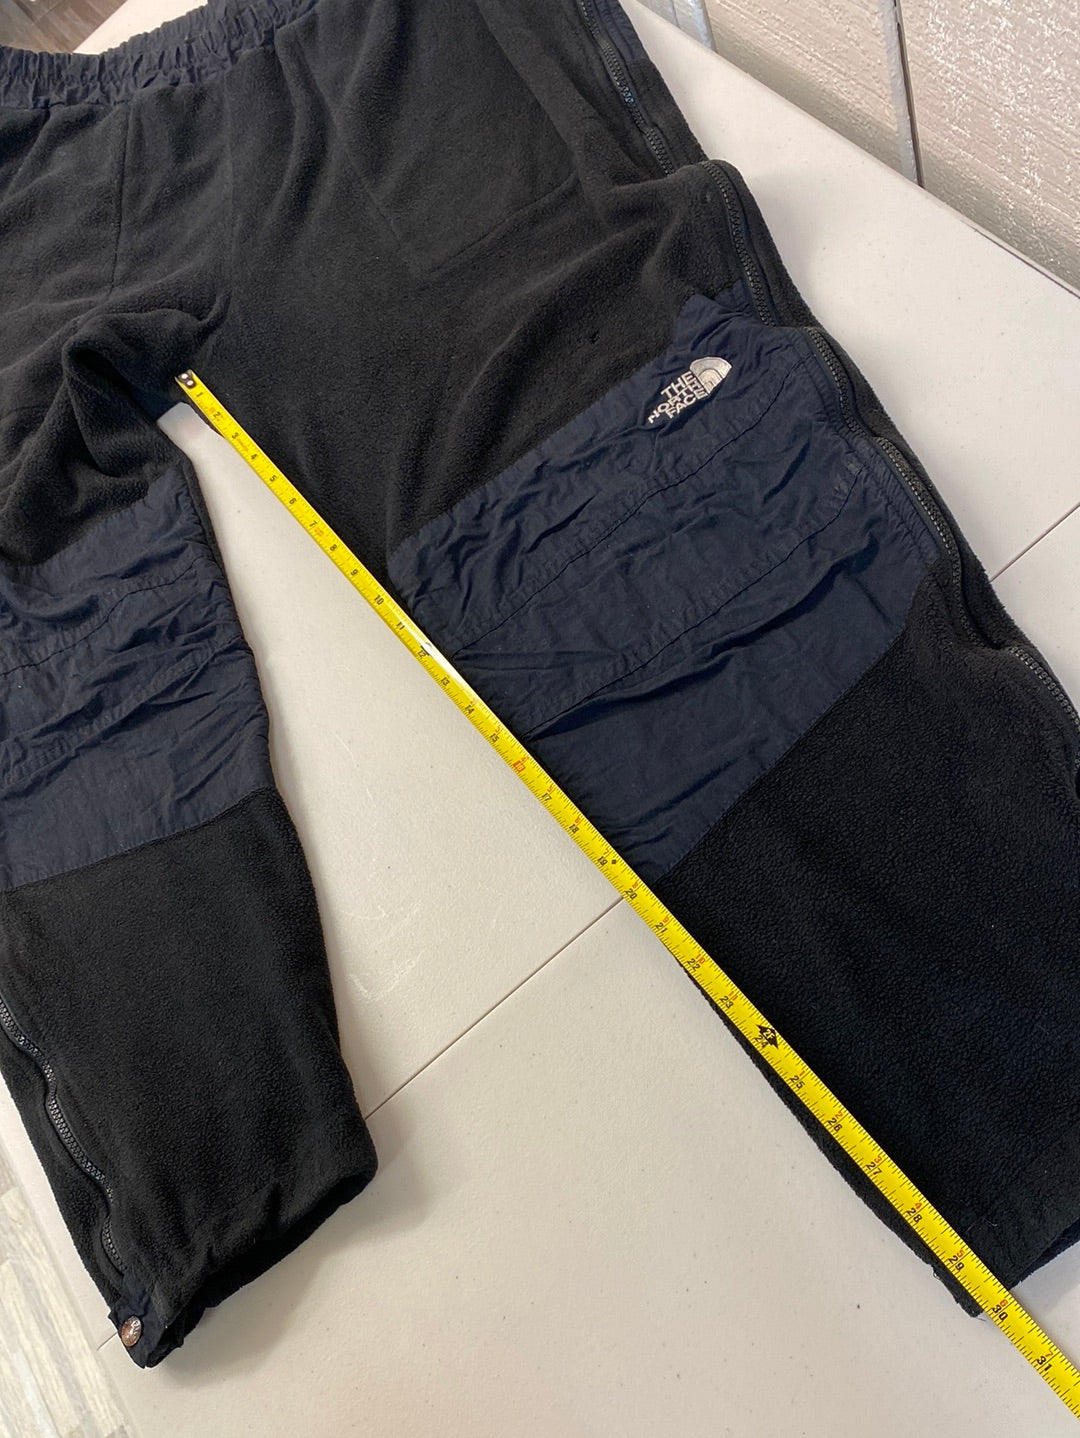 ‘90s The North Face Denali Fleece Pants (XL)